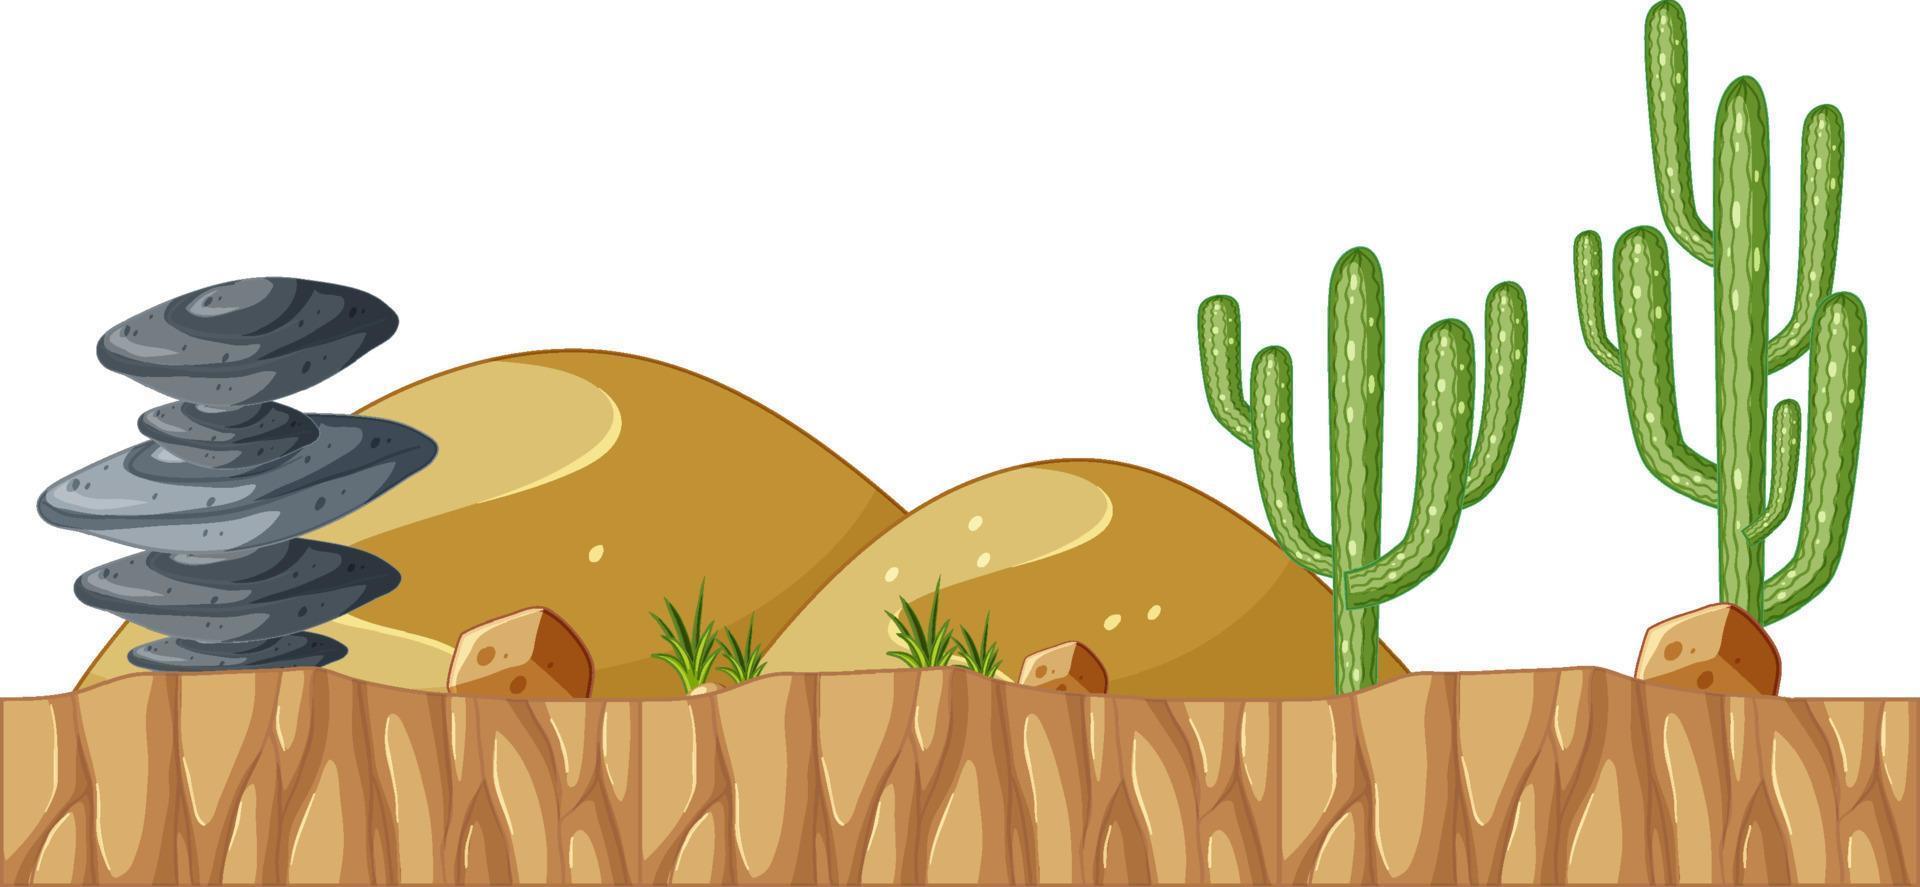 Cactus saguaro y piedra en el suelo. vector